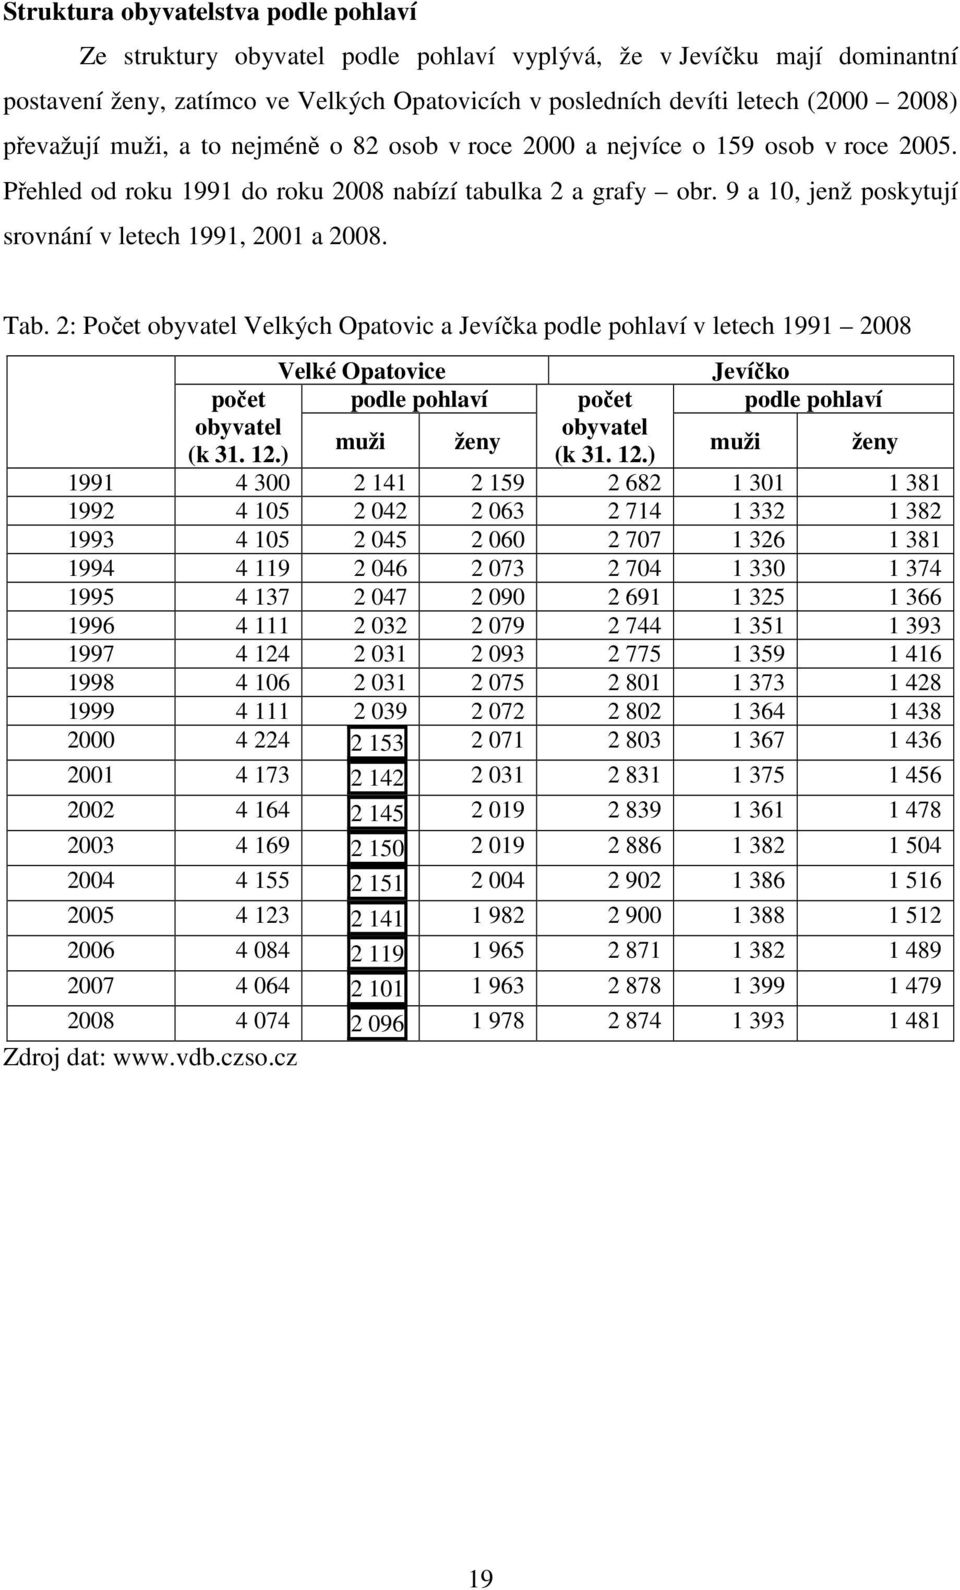 cz Procentuální zastoupení jednotlivých pohlaví ve Velkých Opatovicích v roce 2008 je následující: muži 51,5 %, ženy 48,5 %. Obr.